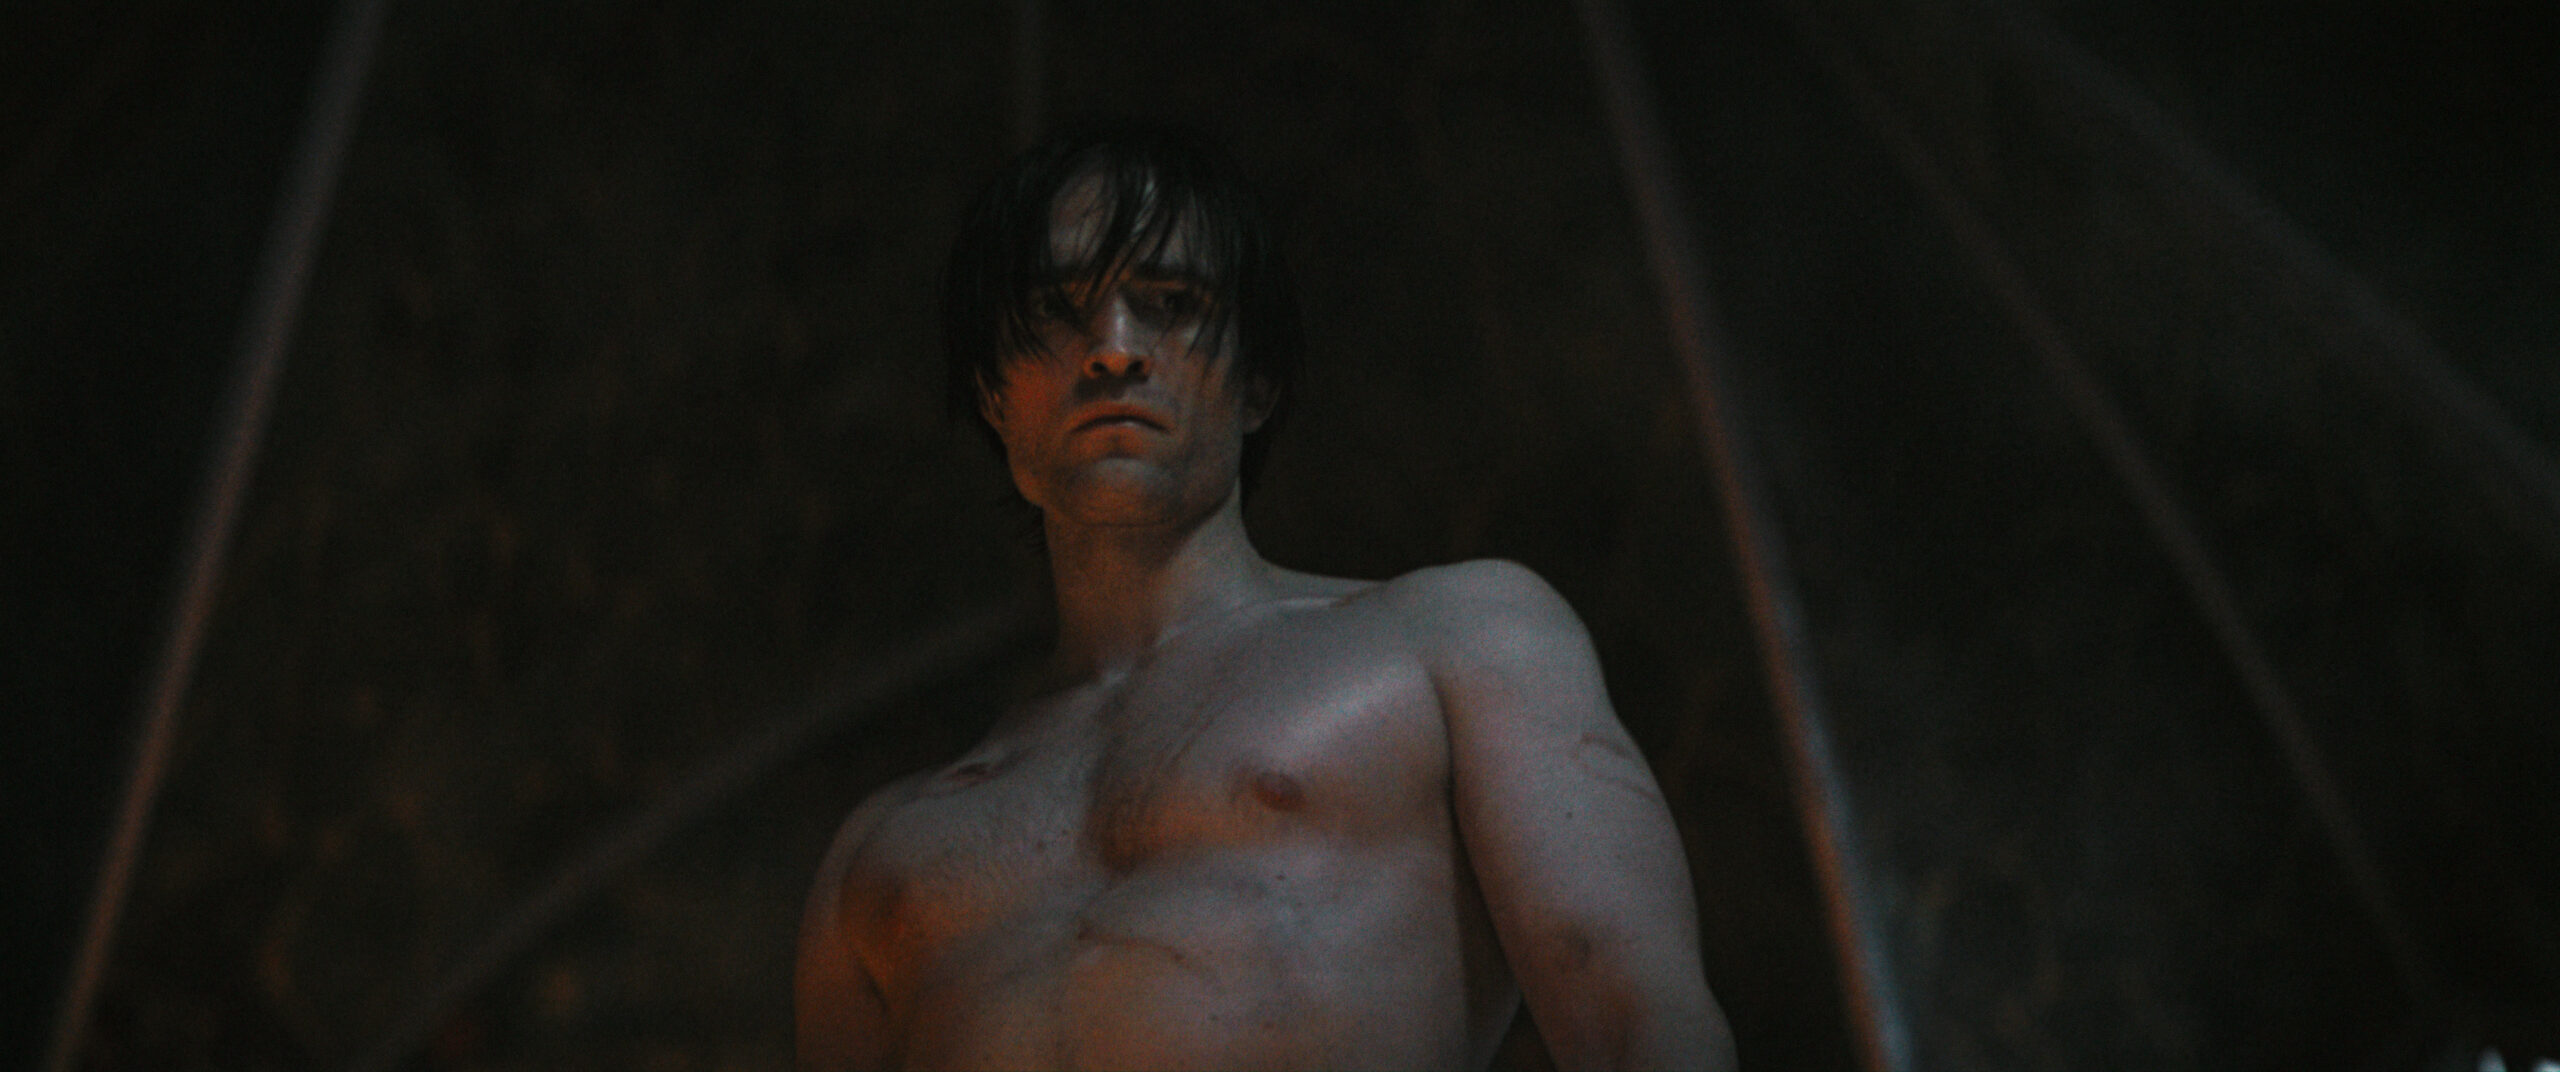 Das sehr dunkle Bild zeigt Robert Pattinson mit nacktem Oberkörper